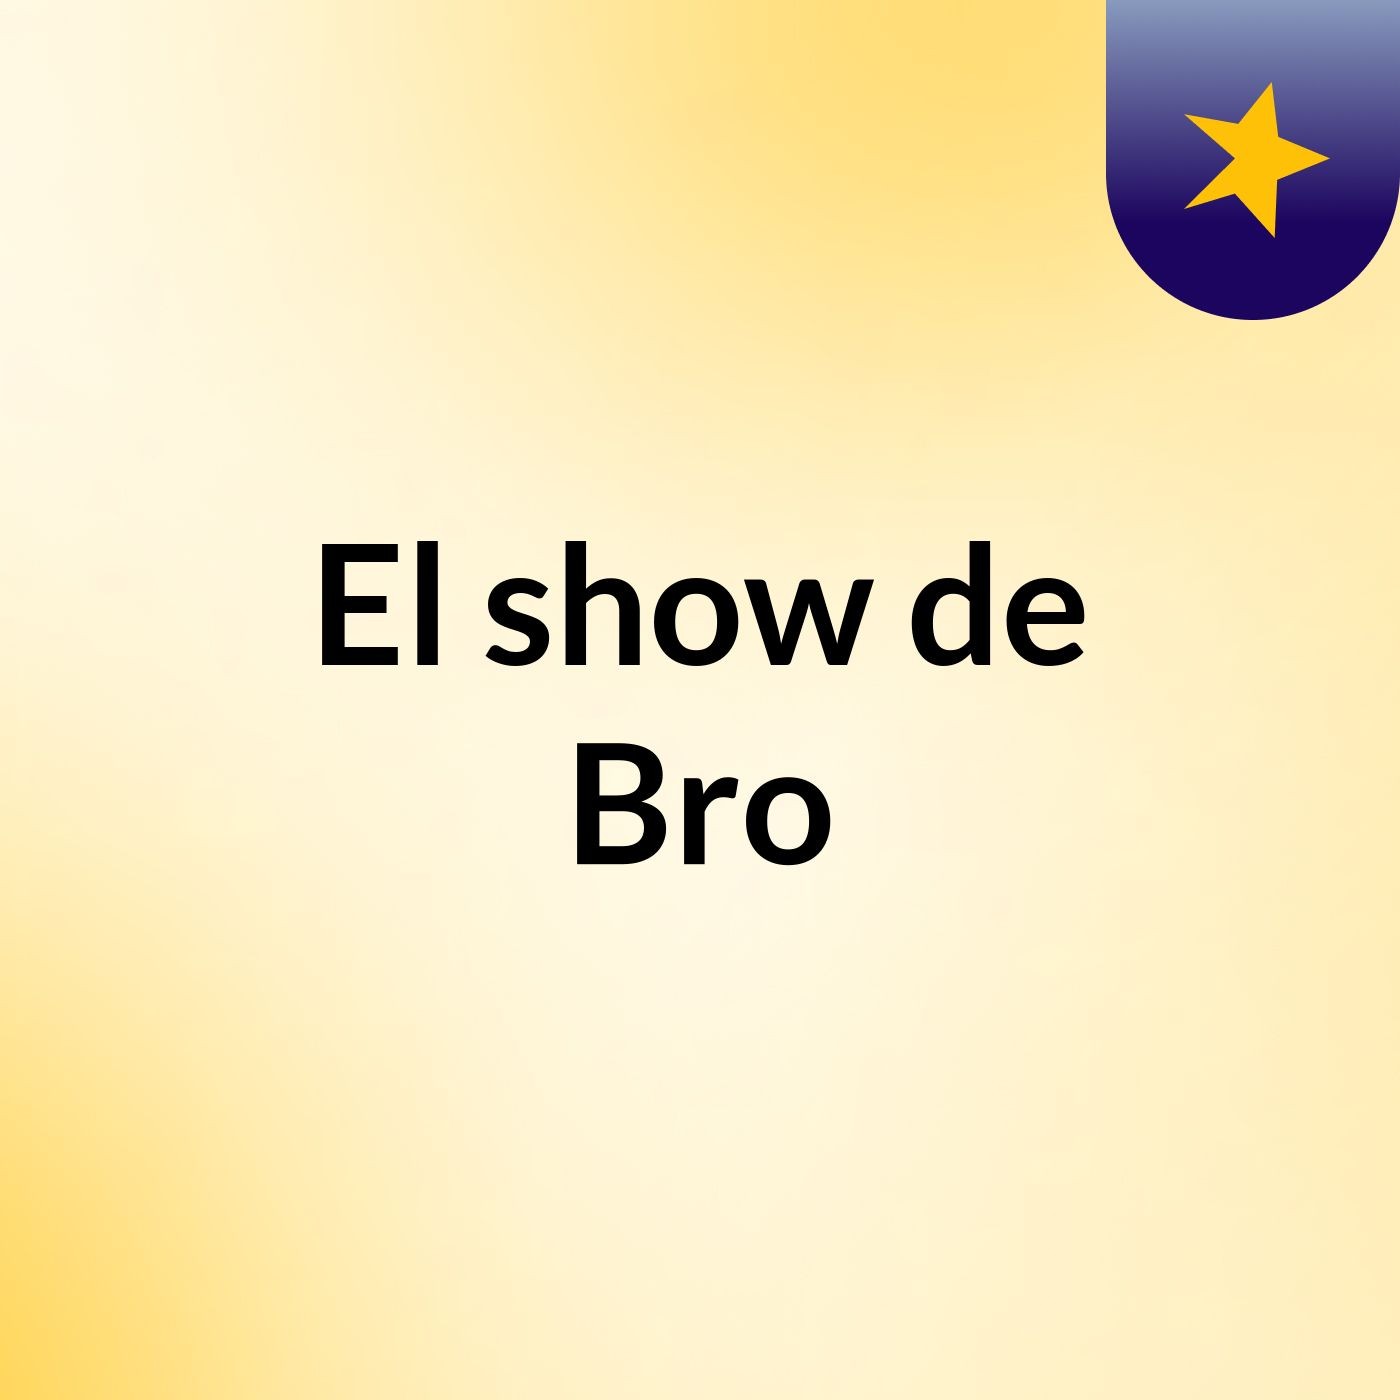 El show de Bro